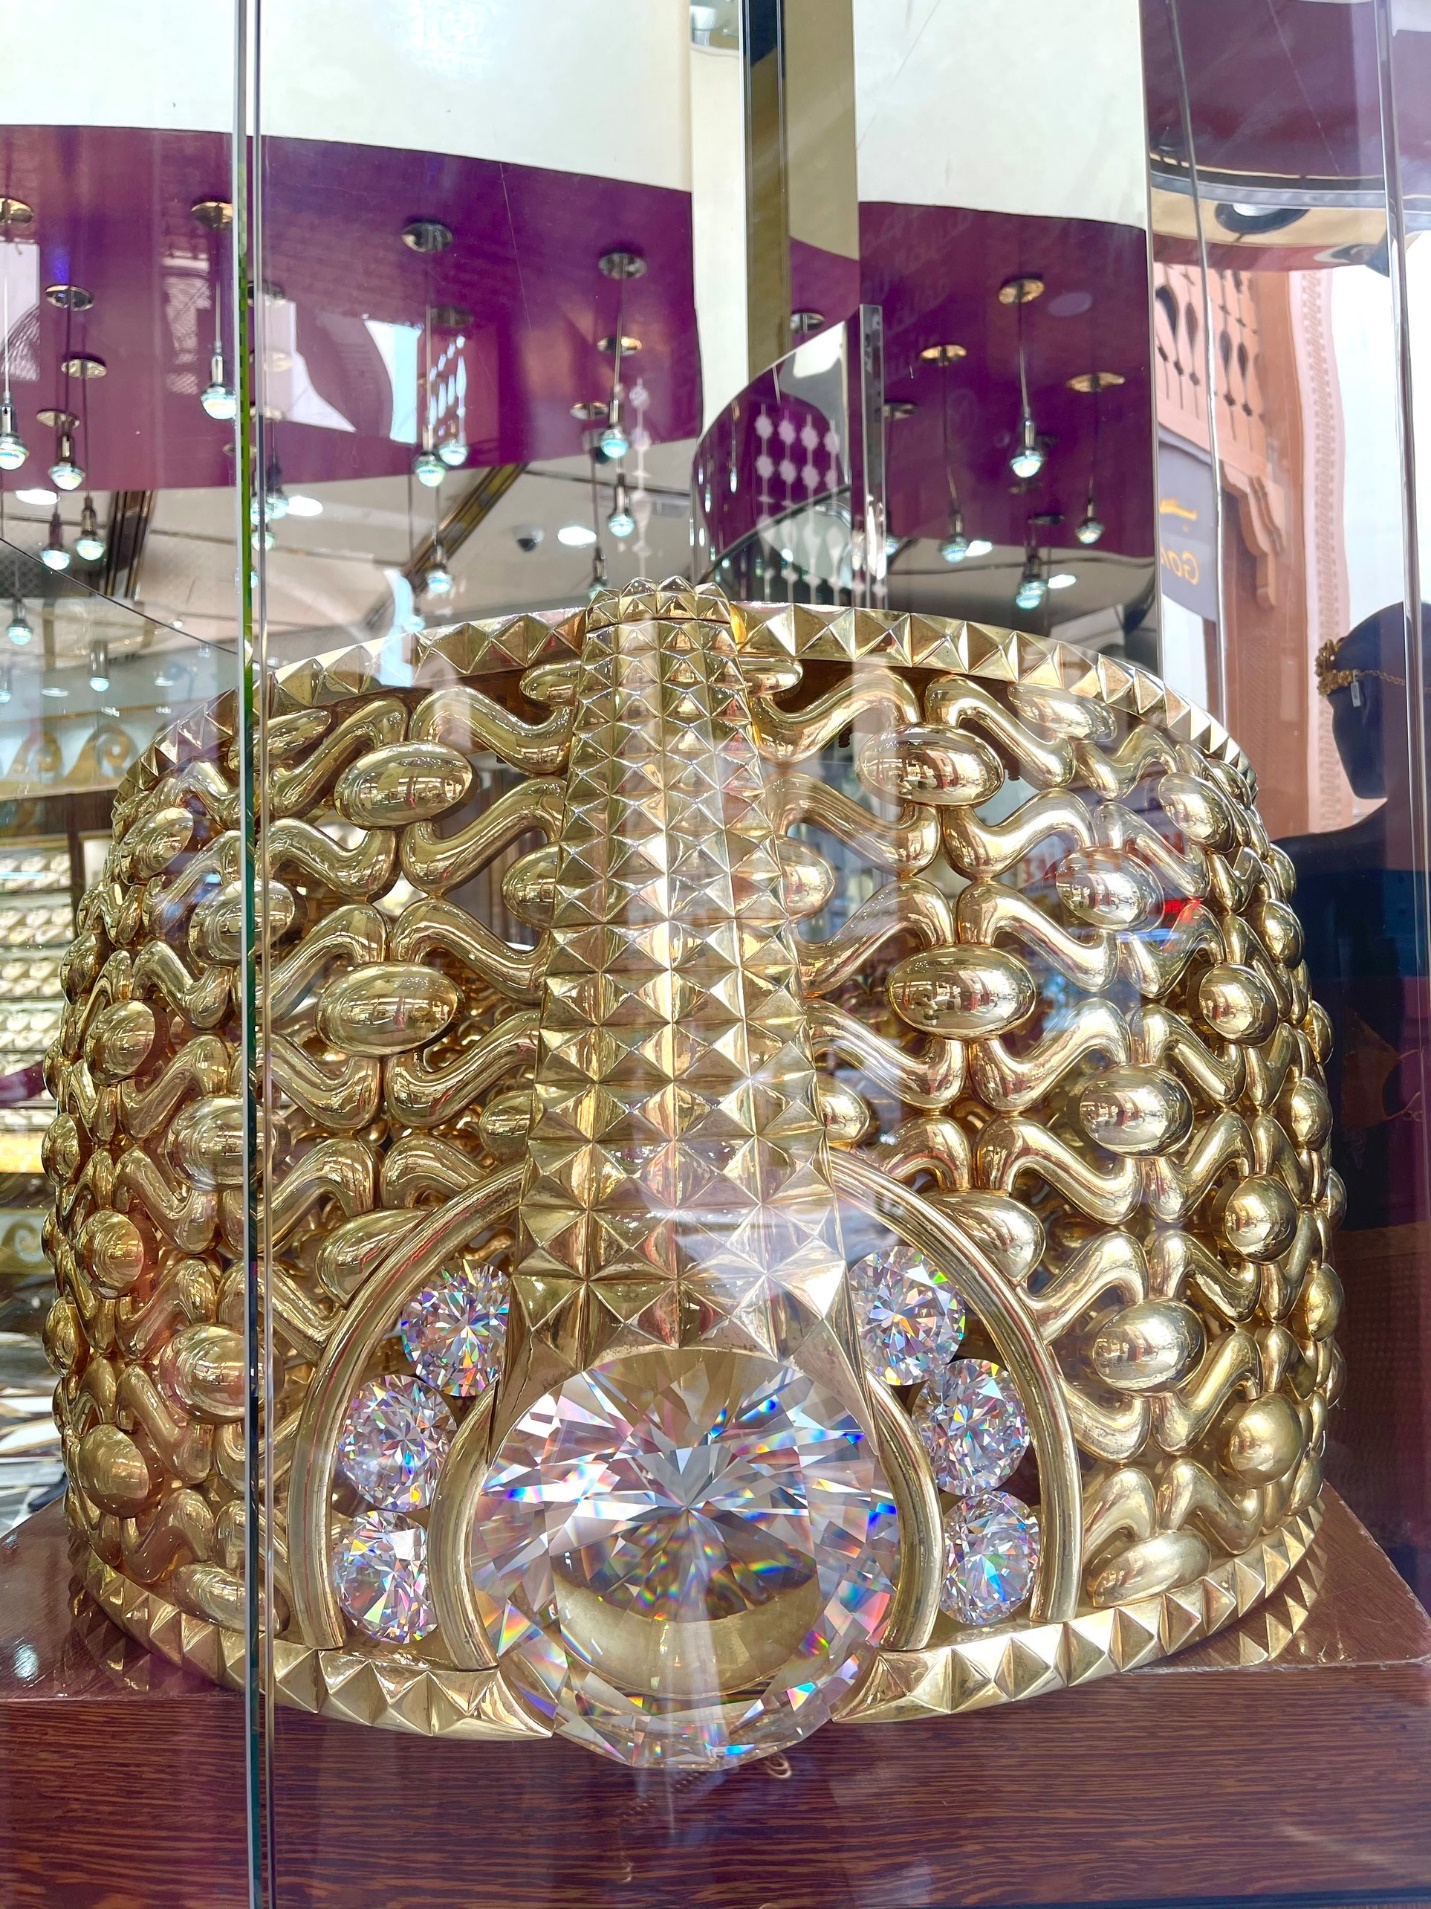 Cô gái Việt mách chiêu mua vàng “giá hời” ở khu chợ bán vàng hàng tấn - 8